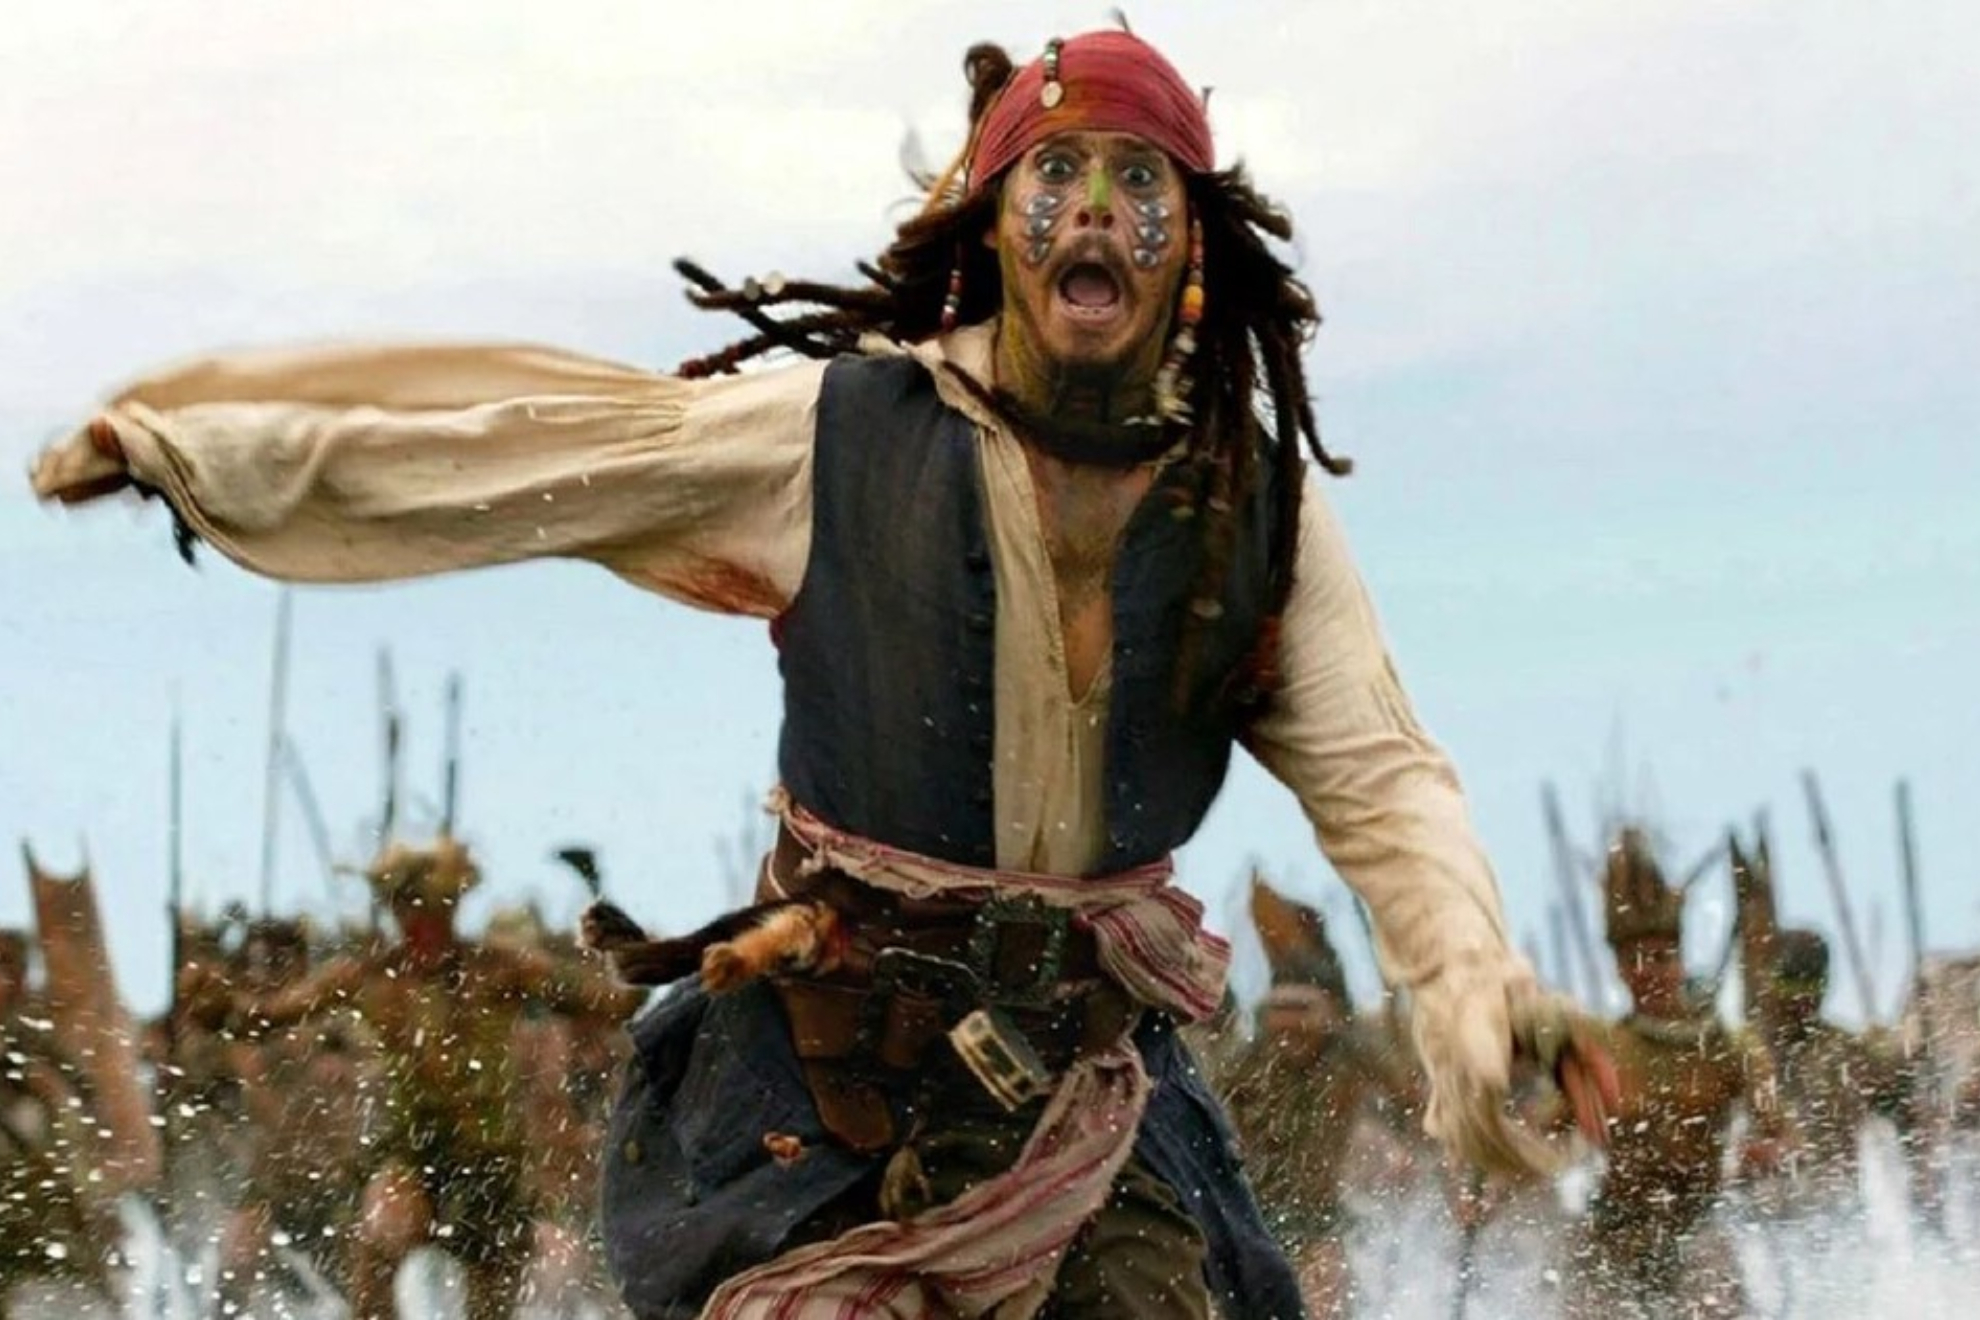 Johnny Deep as Jack Sparrow.